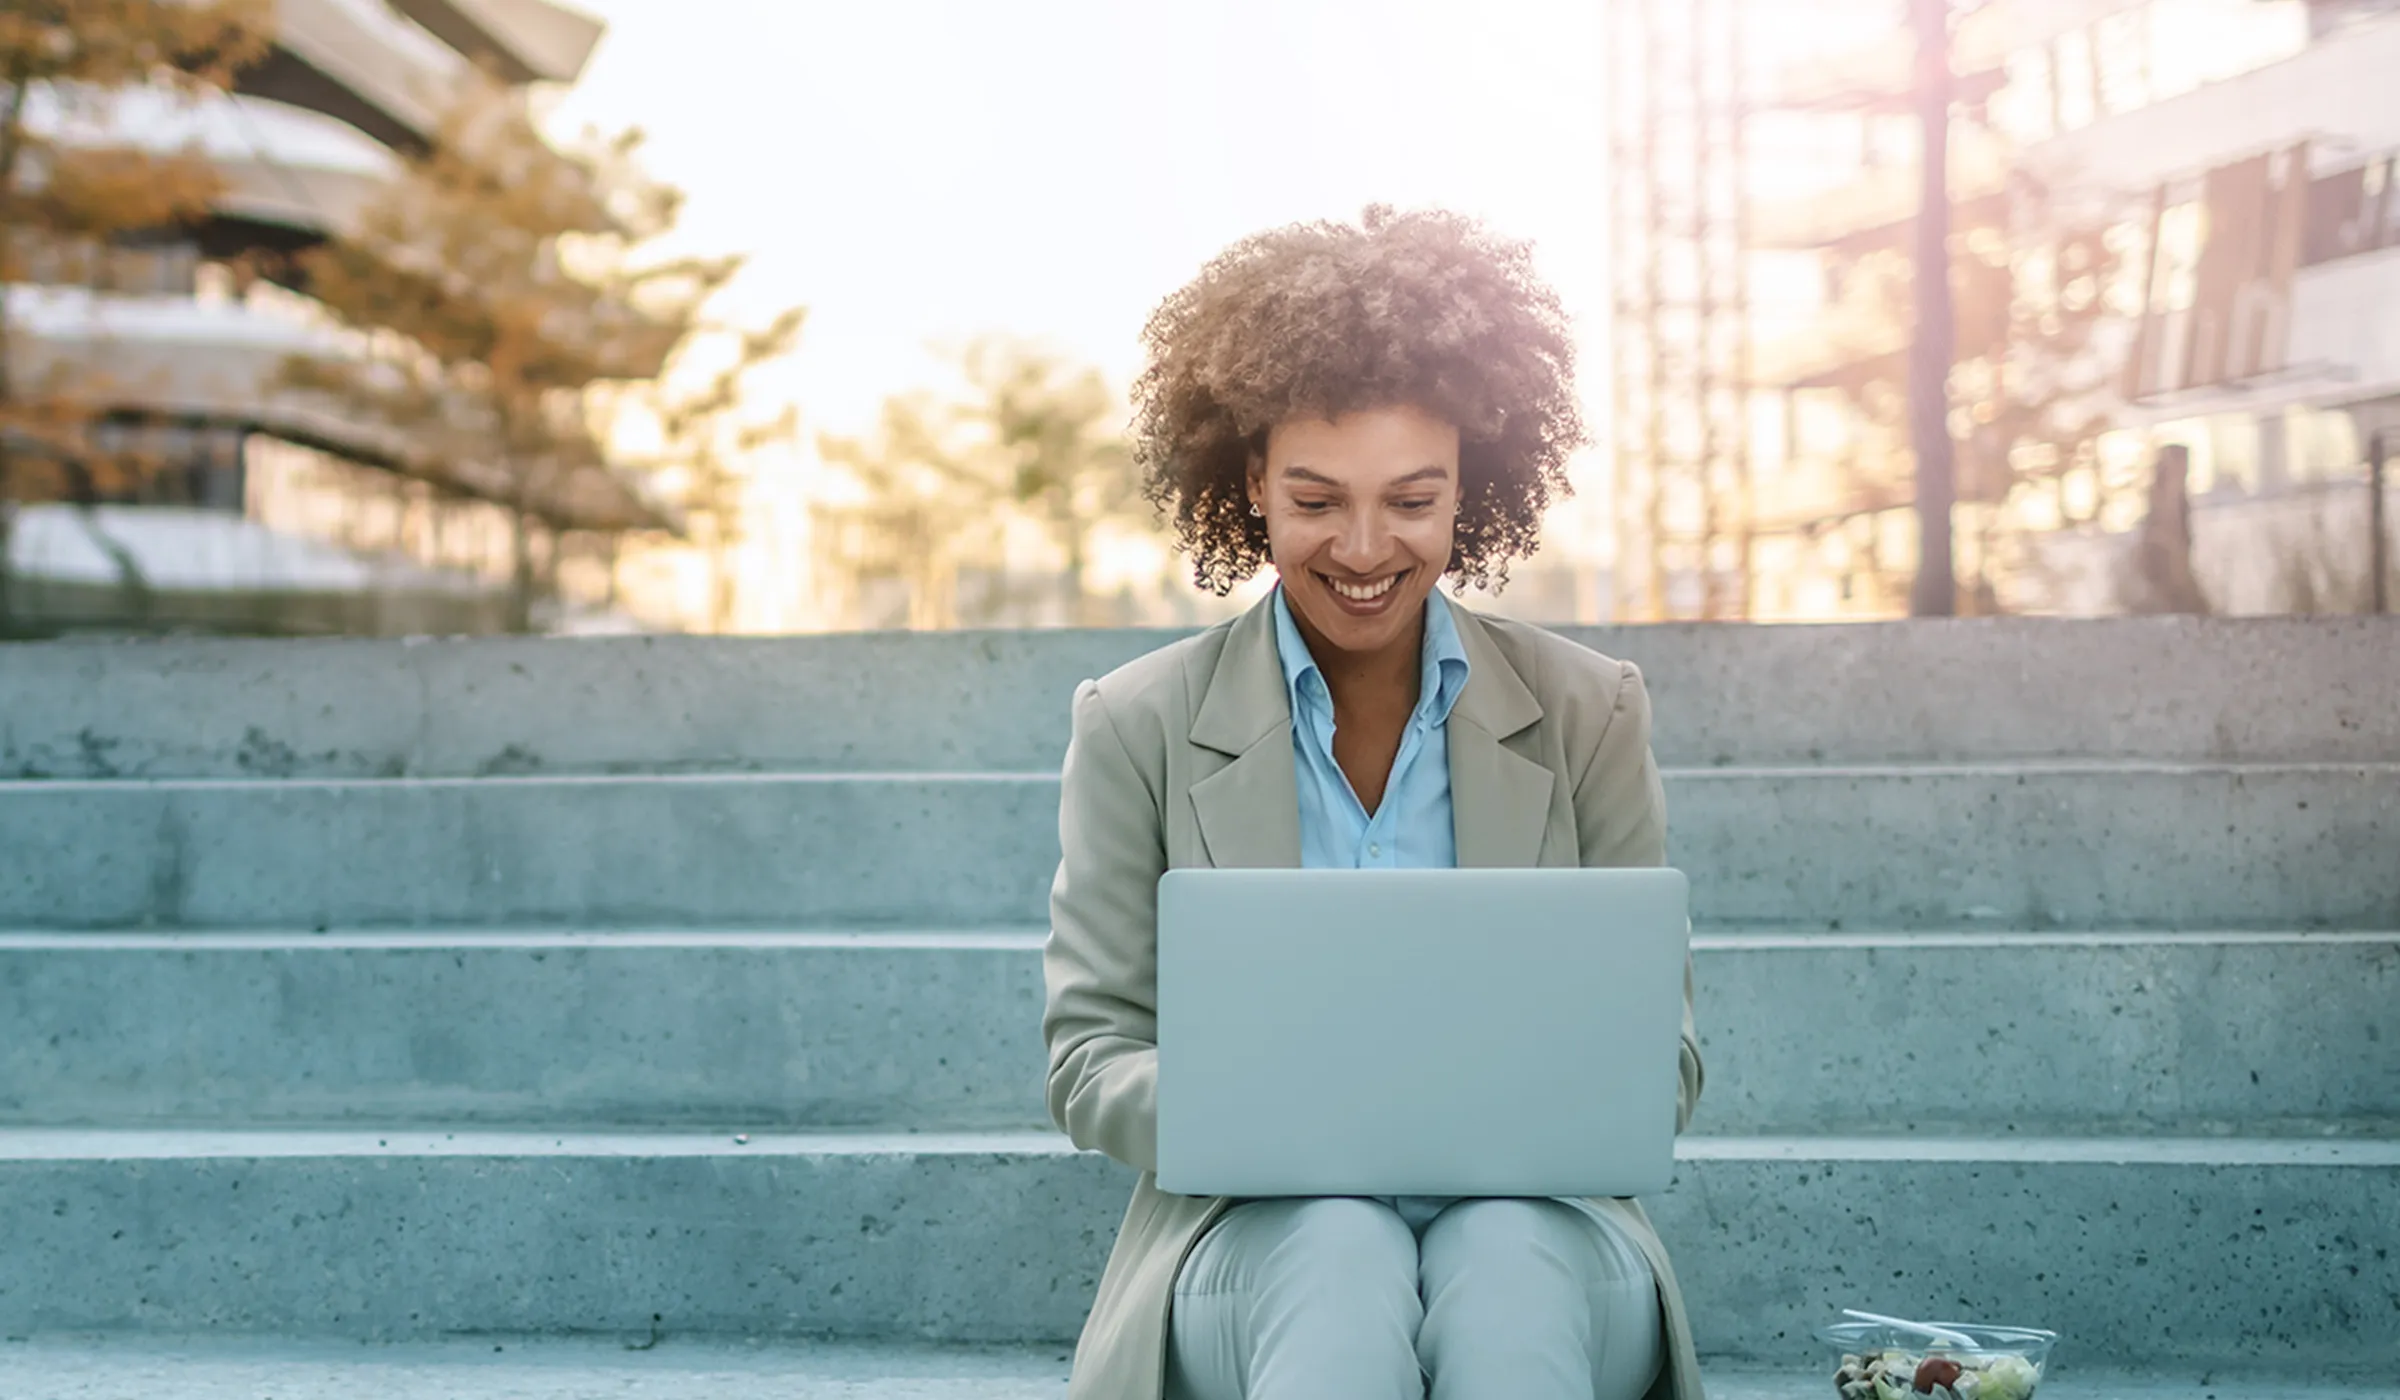 Eine Frau sitzt entspannt auf einer Treppe mit einem Laptop auf ihrem Schoß. Sie ist in eine Arbeit vertieft oder genießt ihre Umgebung. Der Laptop zeigt Professionalität und Flexibilität im Arbeitsstil.